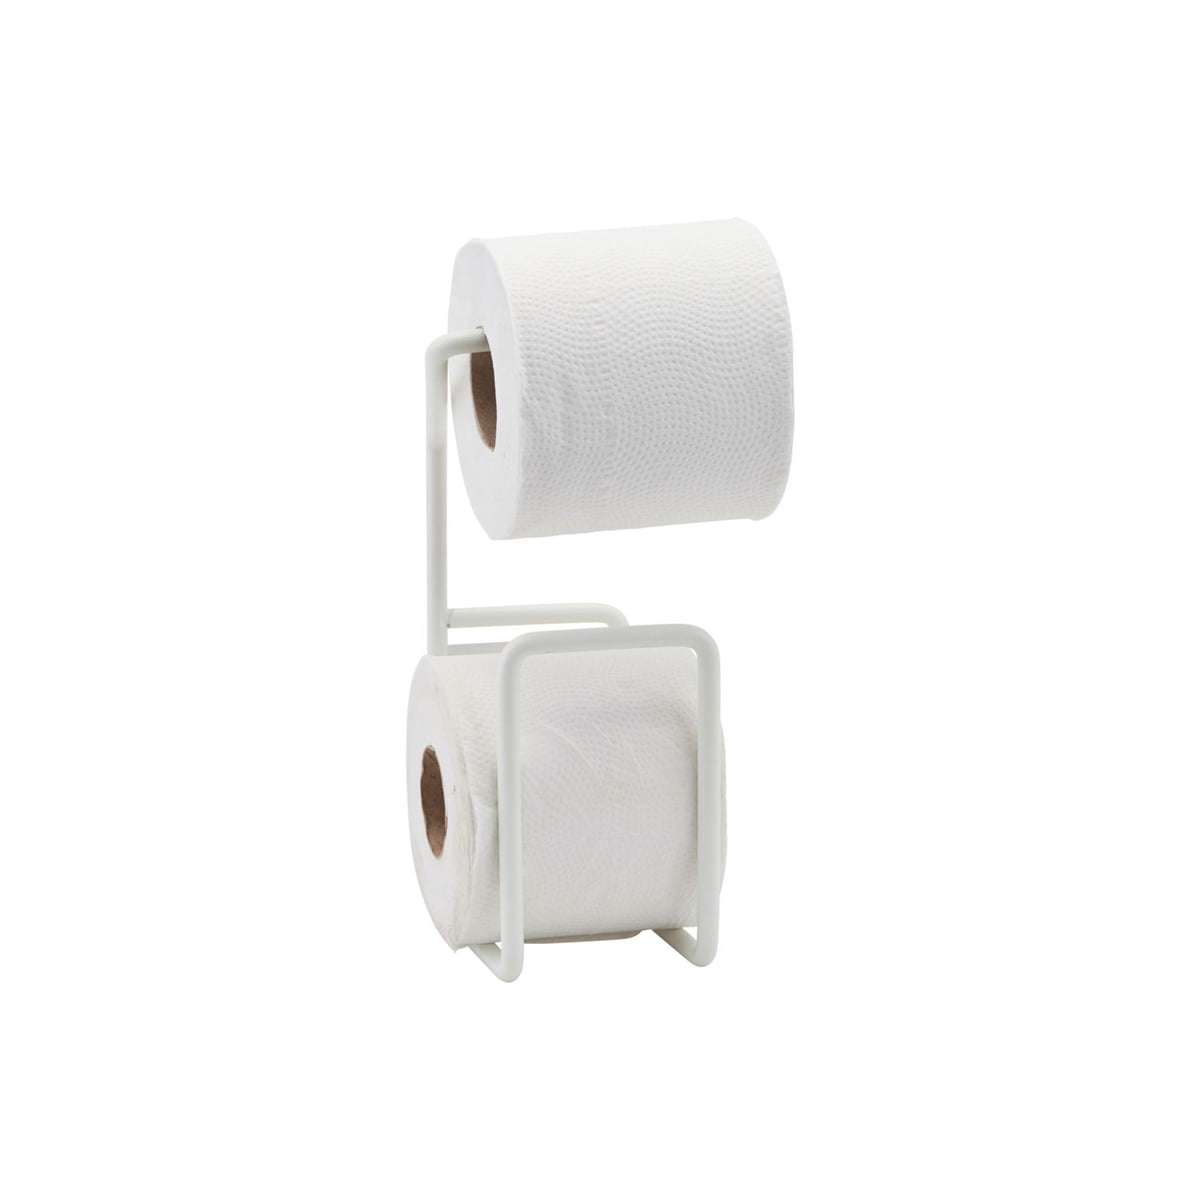 https://cdn.connox.com/m/100030/260321/media/House-Doctor/Via-Toilettenpapierhalter/House-Doctor-Via-Toilettenpapierhalter-weiss-frei.jpg